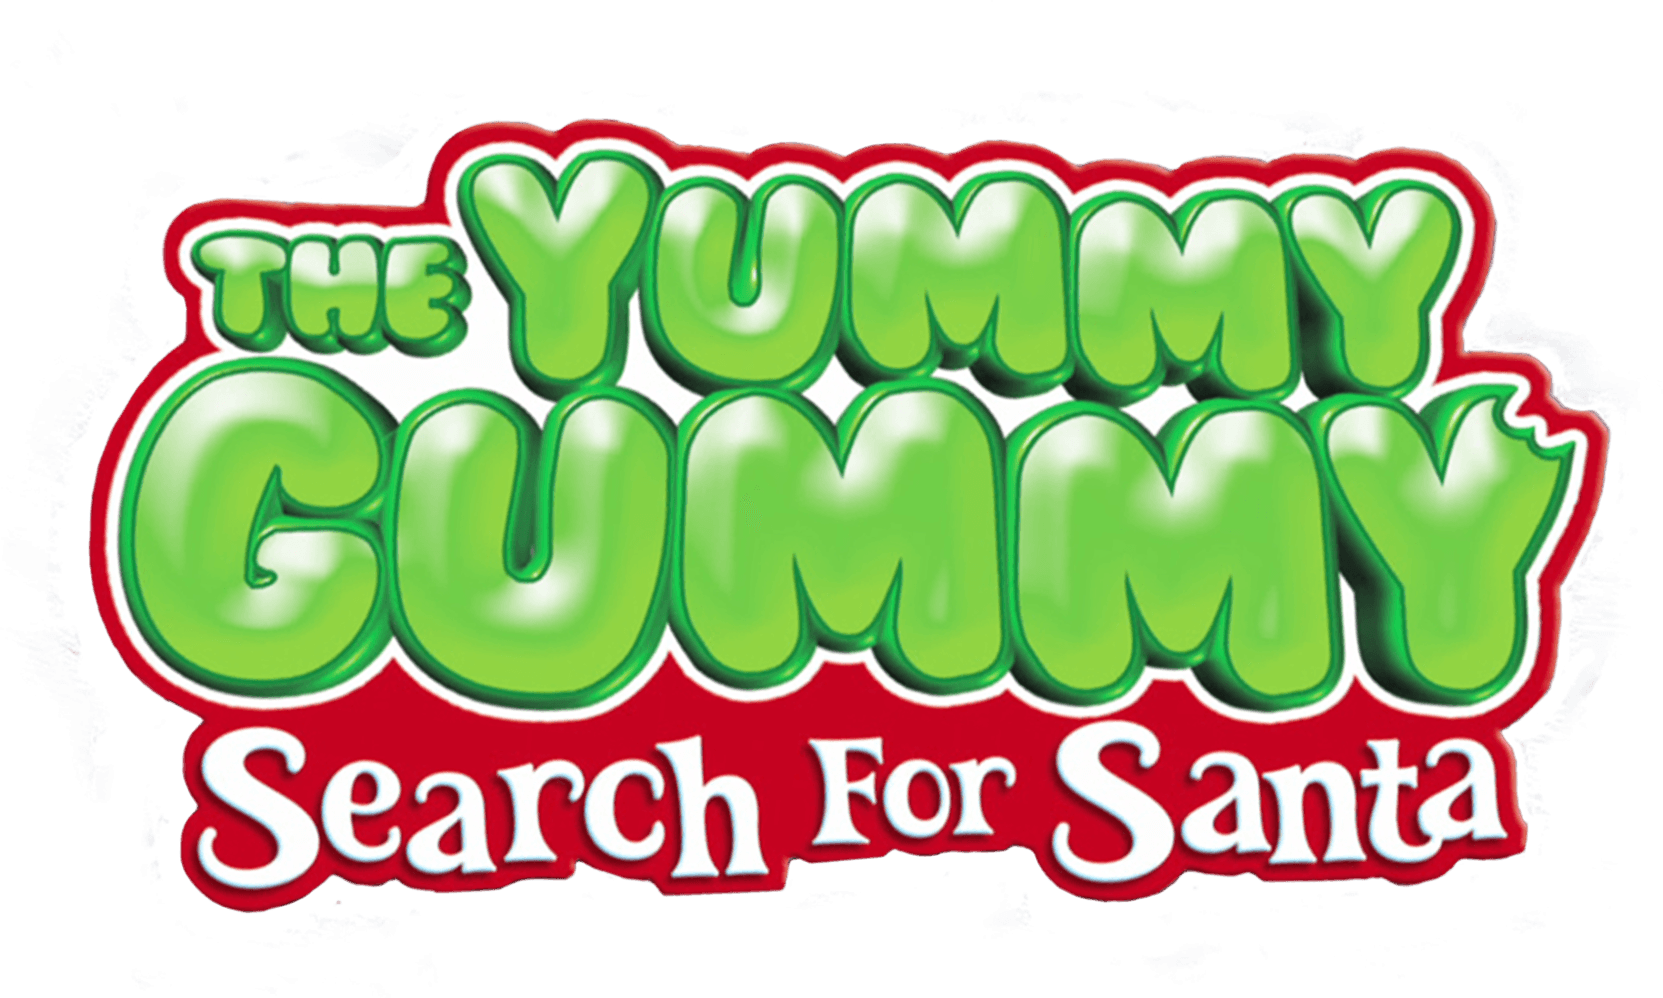 The Yummy Gummy Search for Santa logo